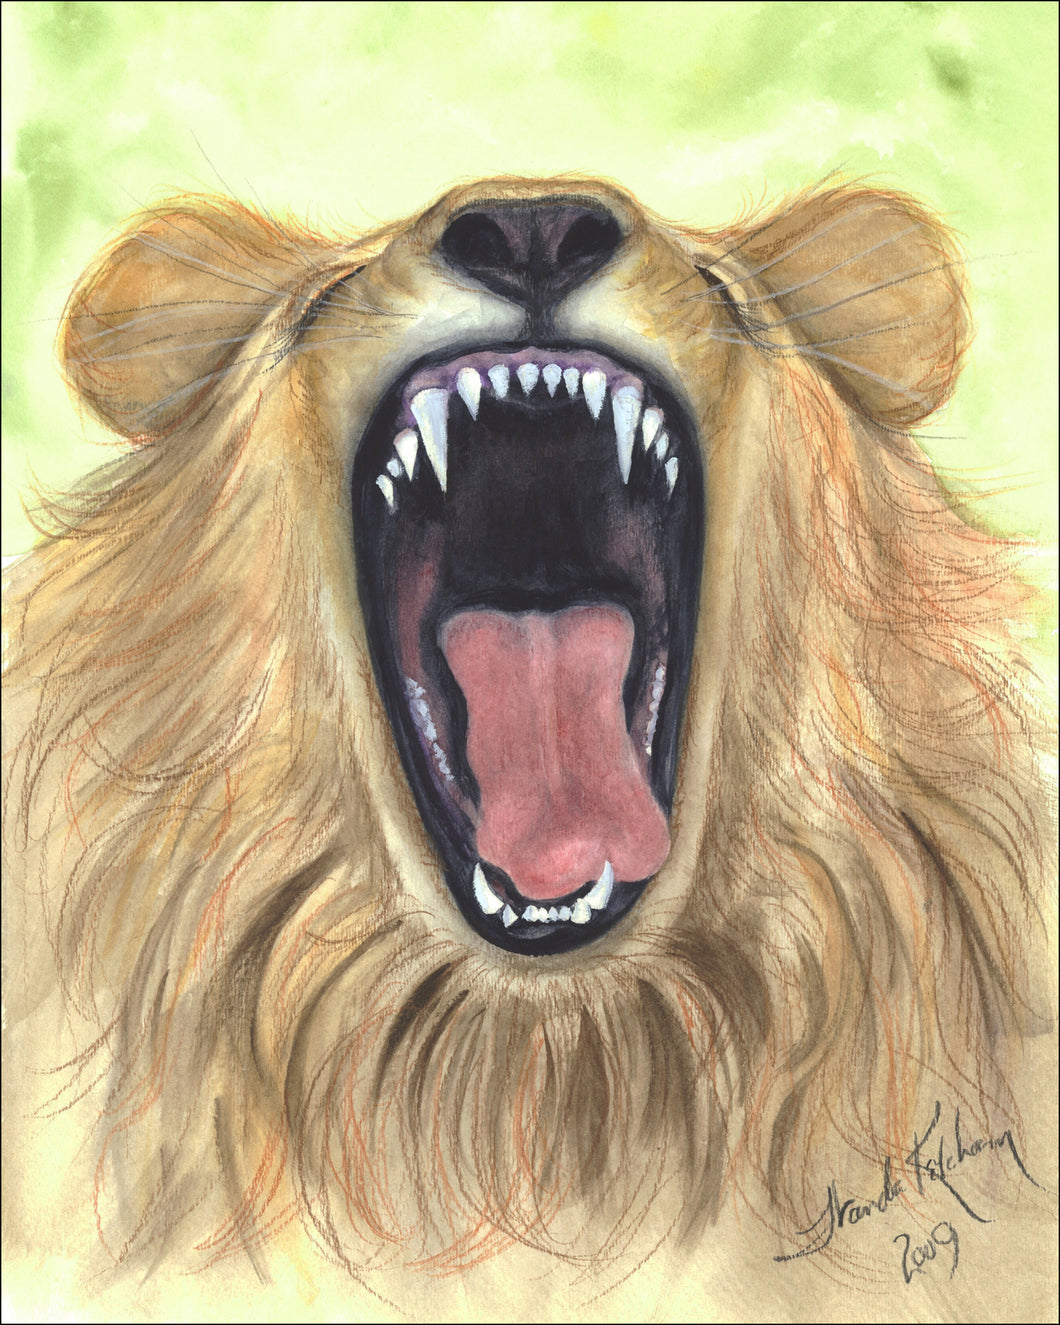 Yawning Lion